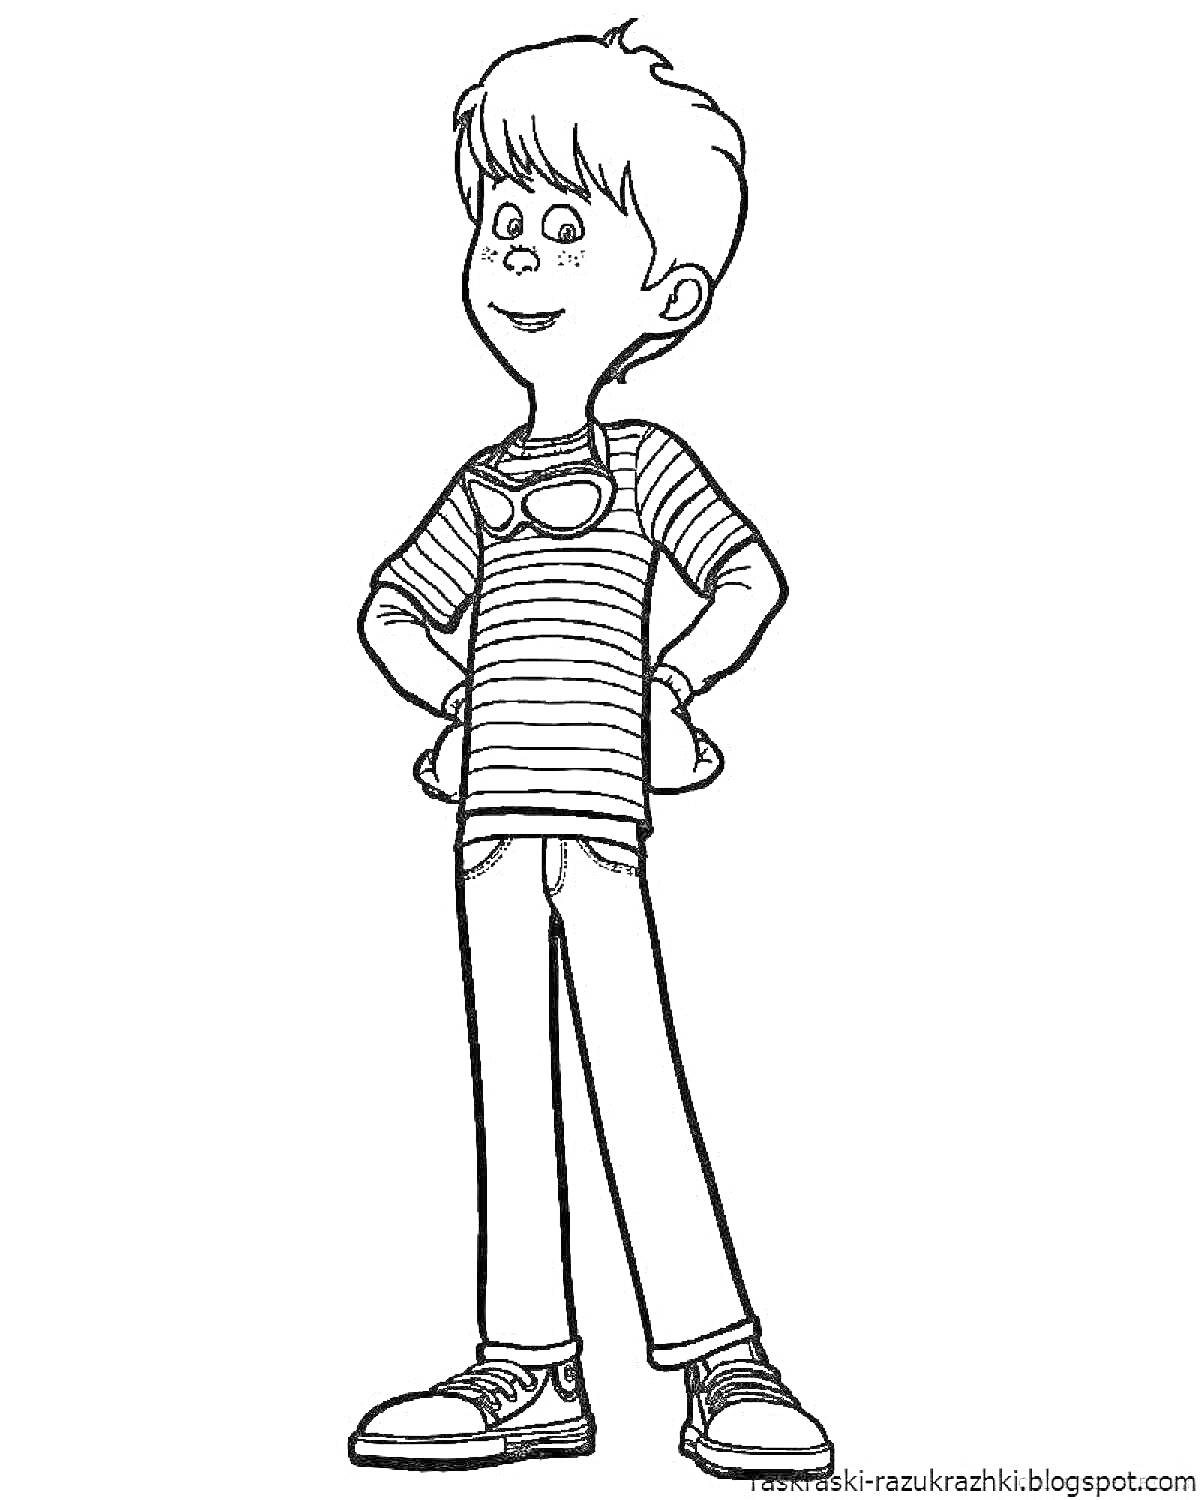 Раскраска Мальчик в полосатой футболке с коротким рукавом, брюках и кедах, стоит с руками на пояс